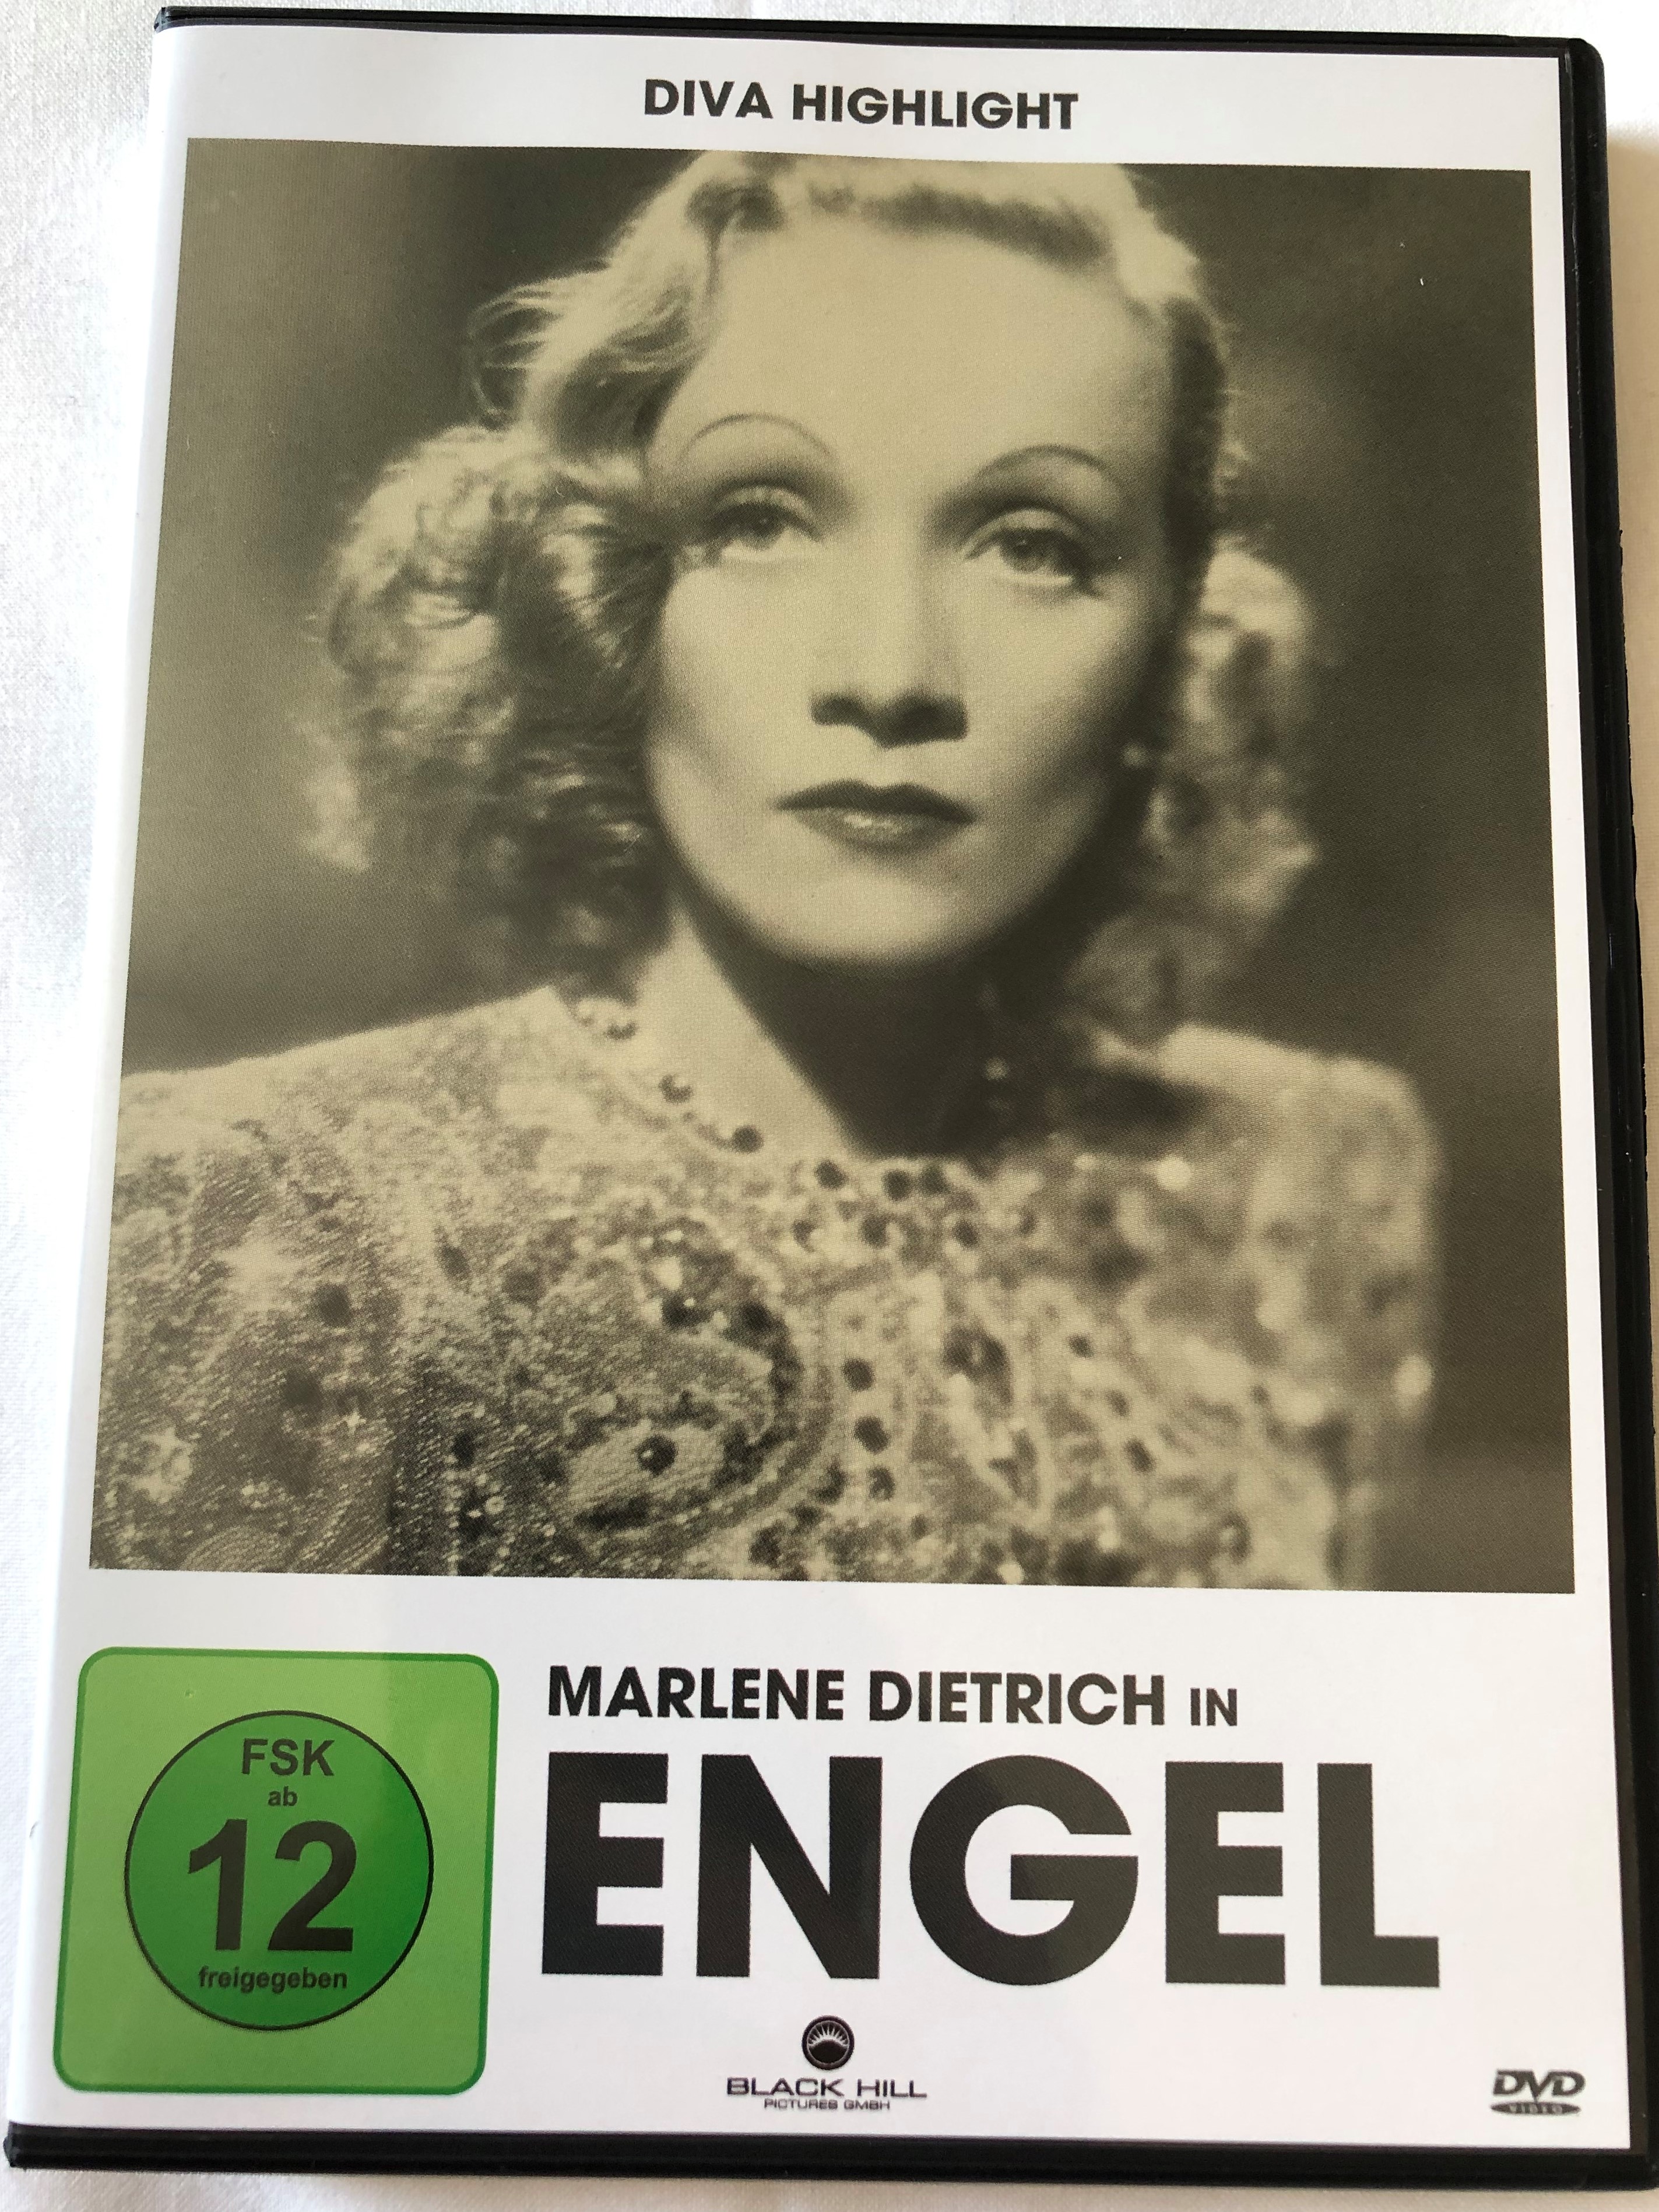 engel-dvd-1937-angel-directed-by-ernst-lubitsch-starring-marlene-dietrich-herbert-marshall-melvyn-douglas-diva-highlight-1-.jpg